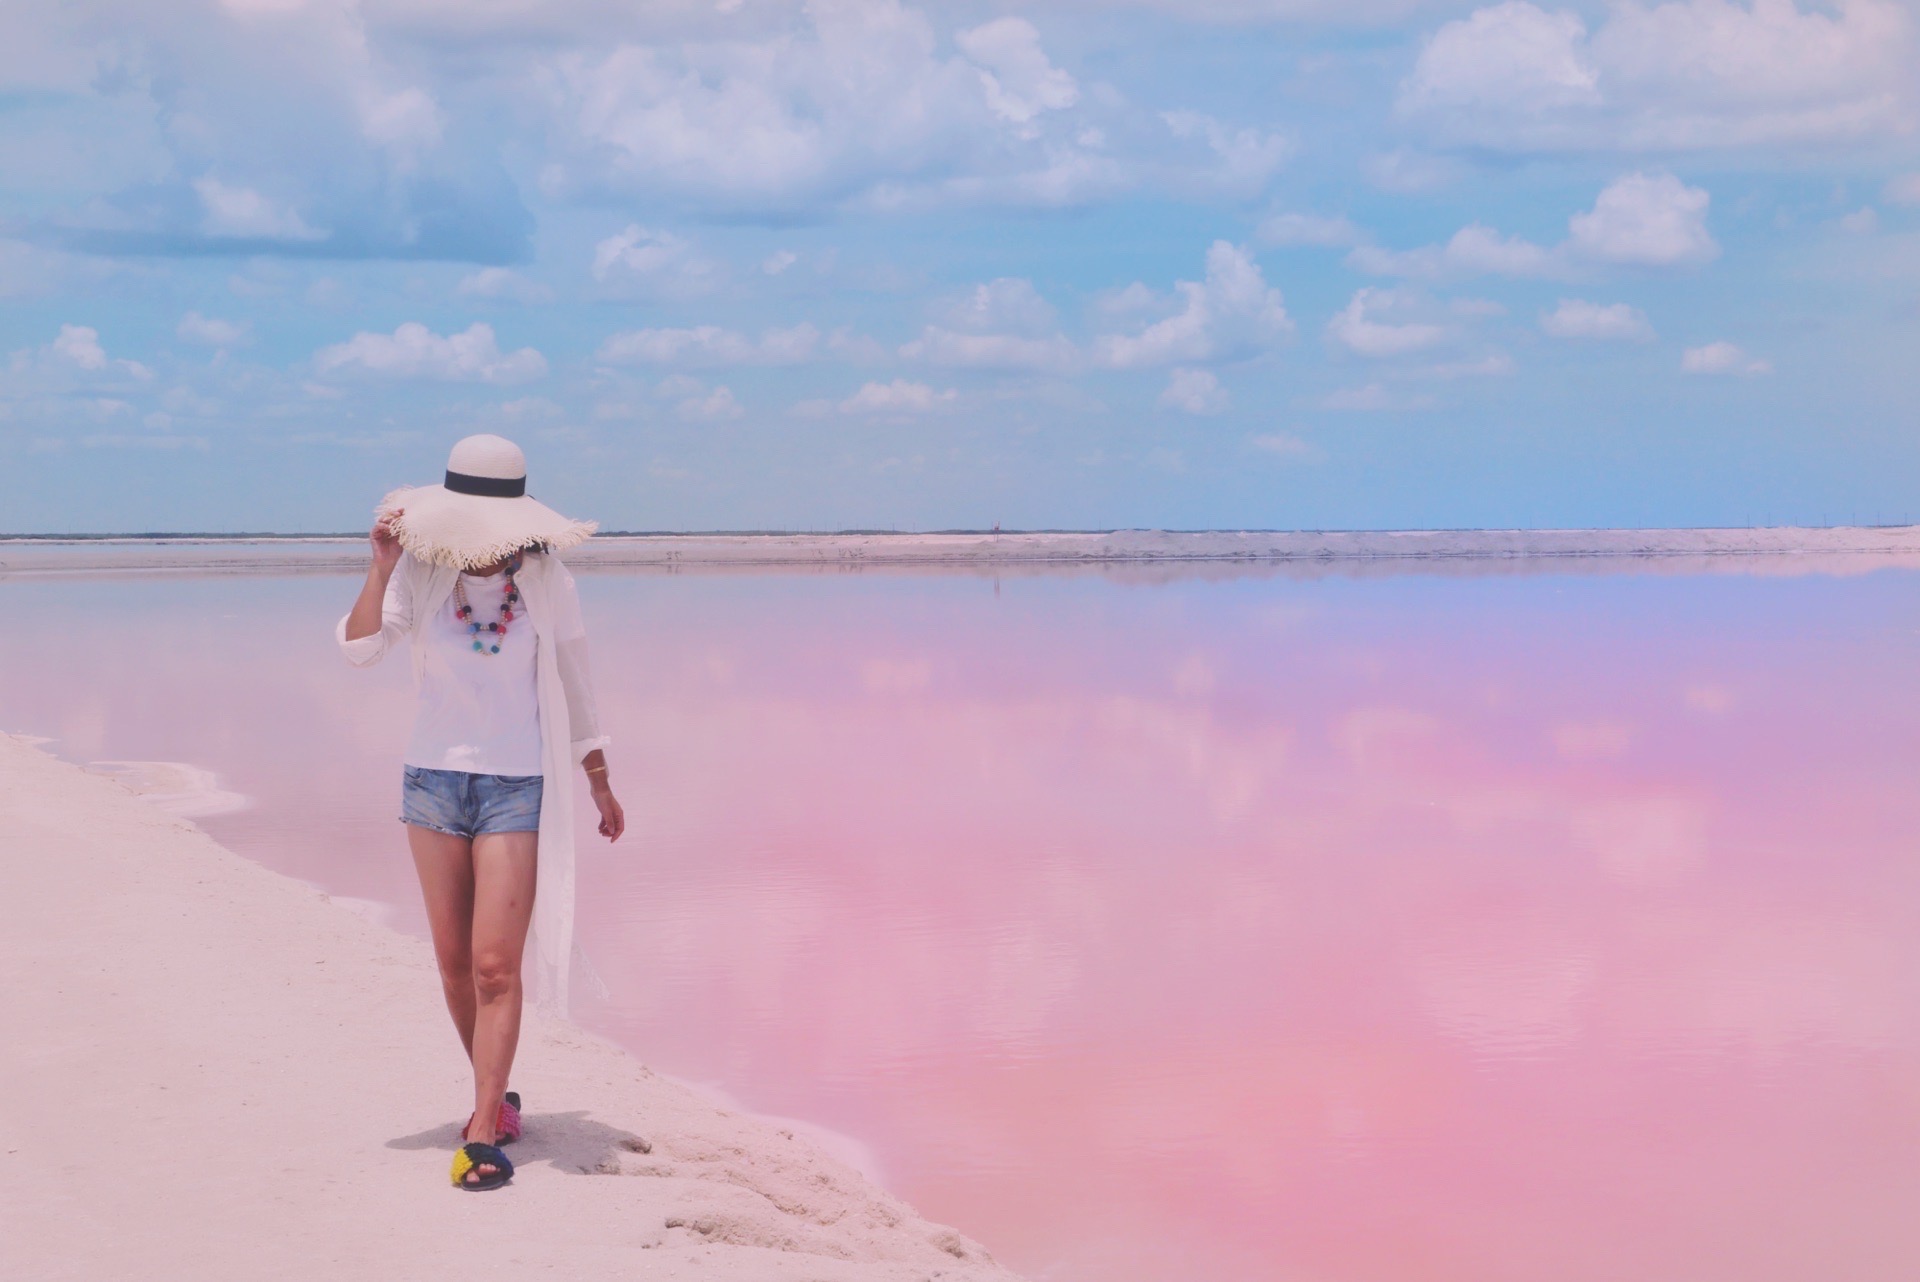 #墨西哥#如梦如幻的粉红之境  粉红湖 是因为粉粉的颜色大家给它的简称，其实它是在墨西哥尤卡坦半岛的